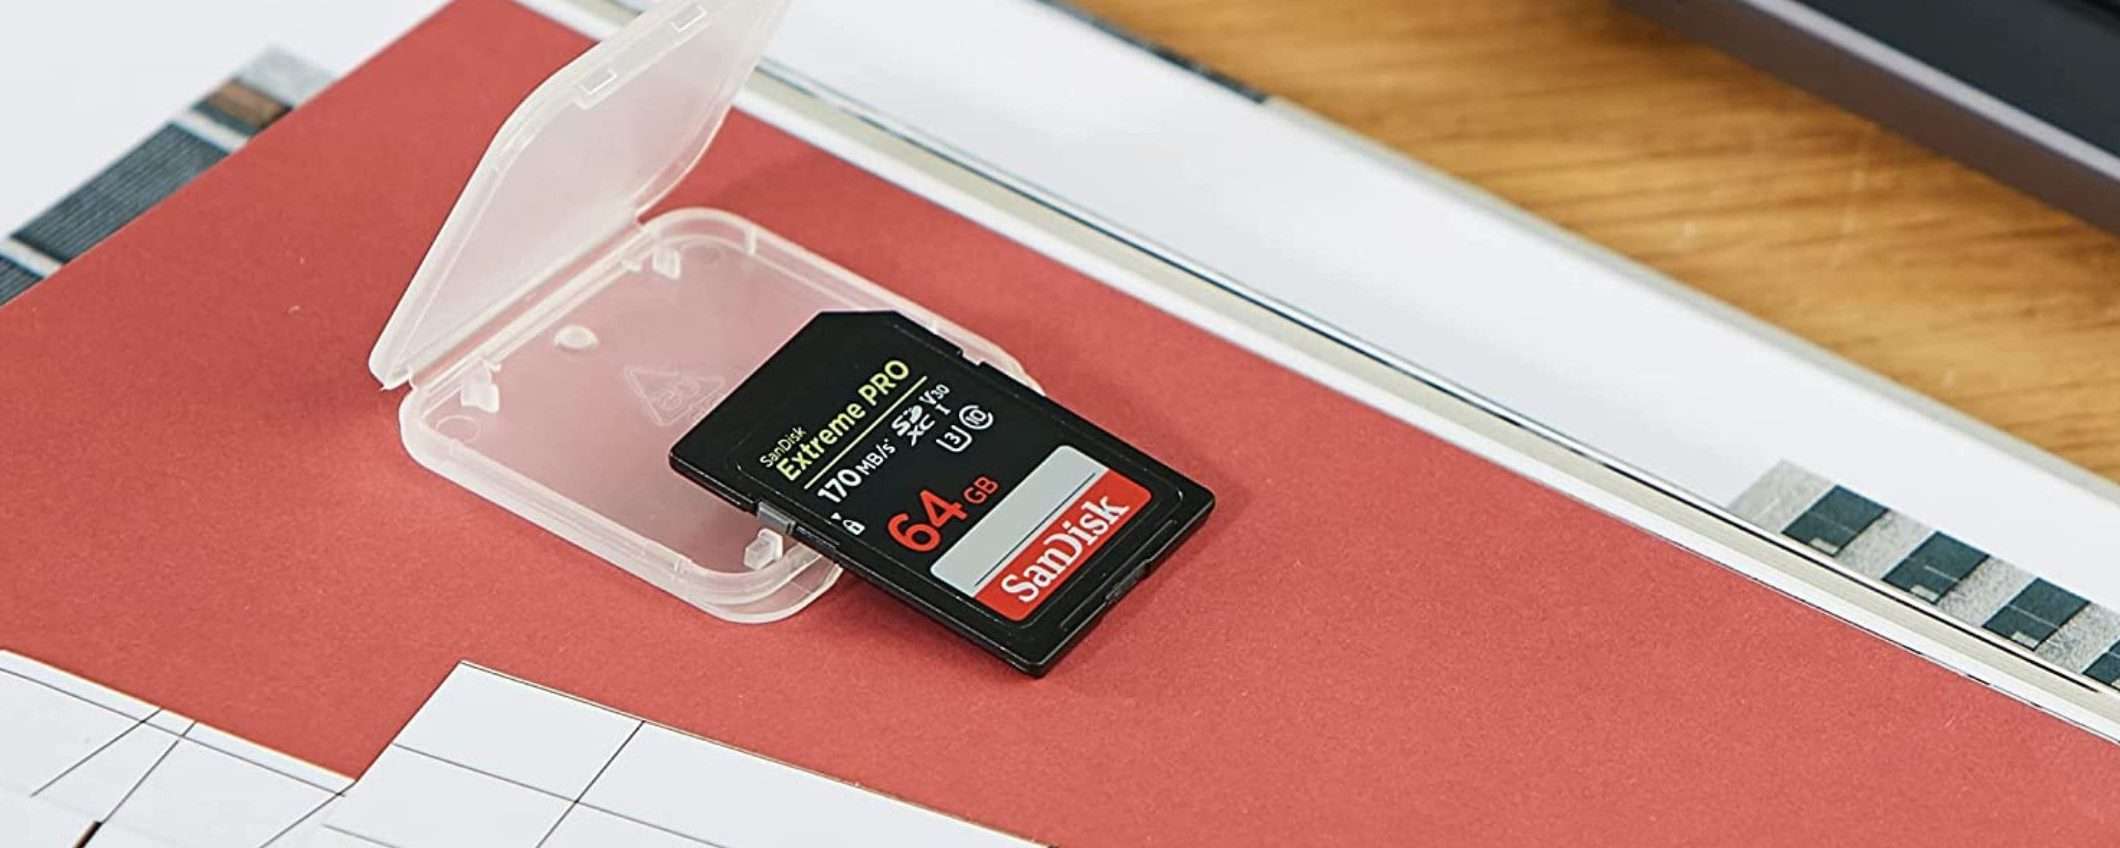 Scheda microSDXC SanDisk: offerta Prime da paura, solo 19€